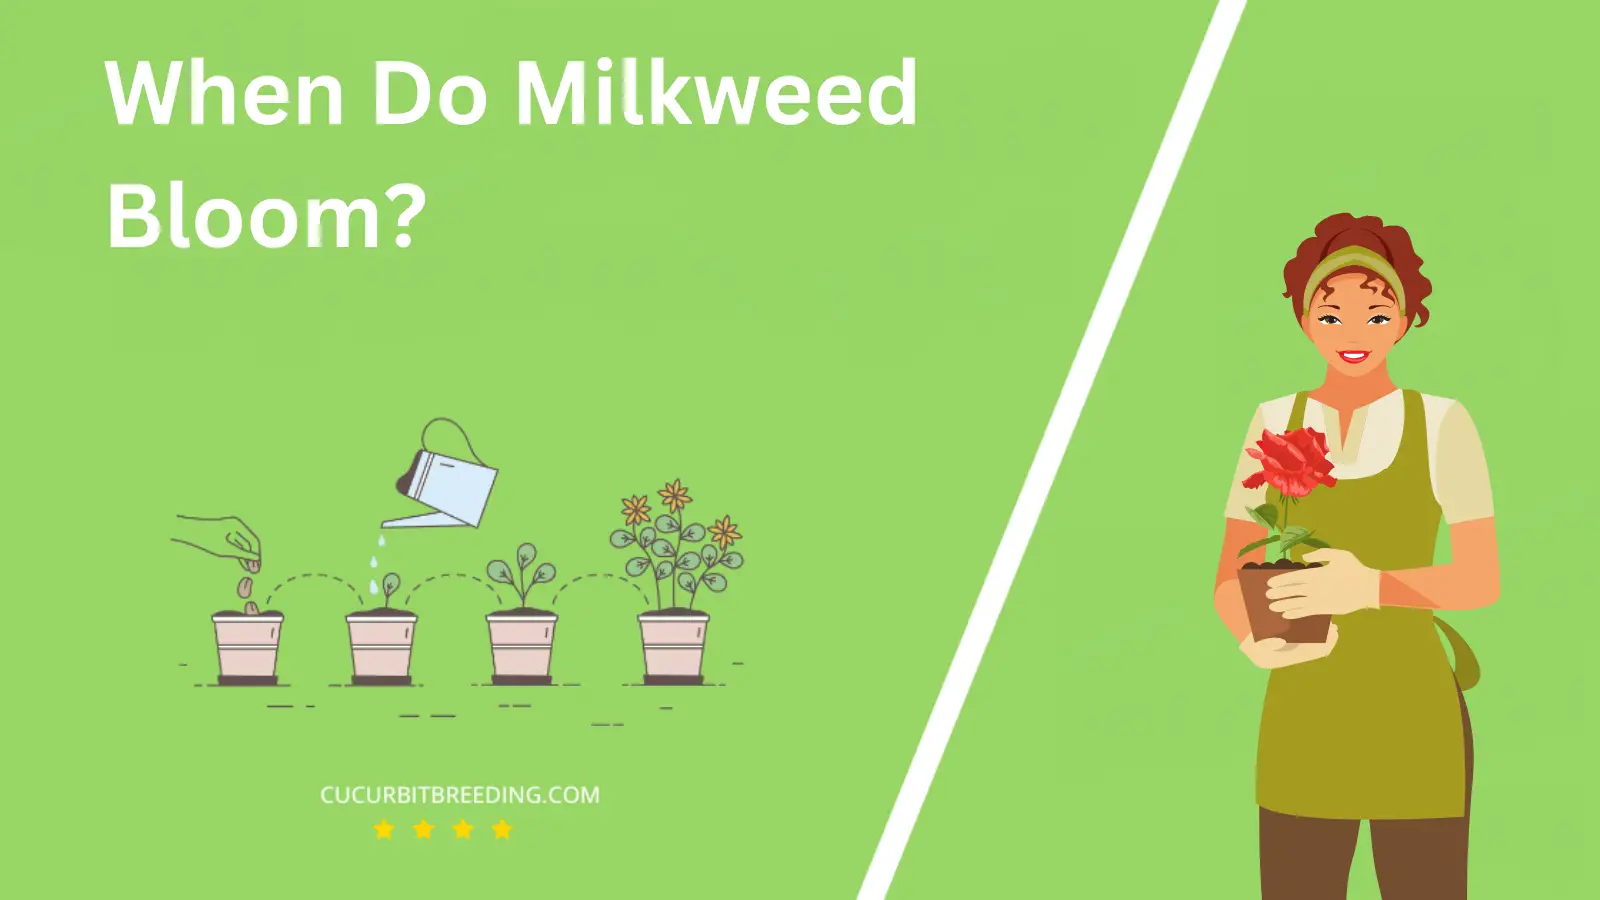 When Do Milkweed Bloom?